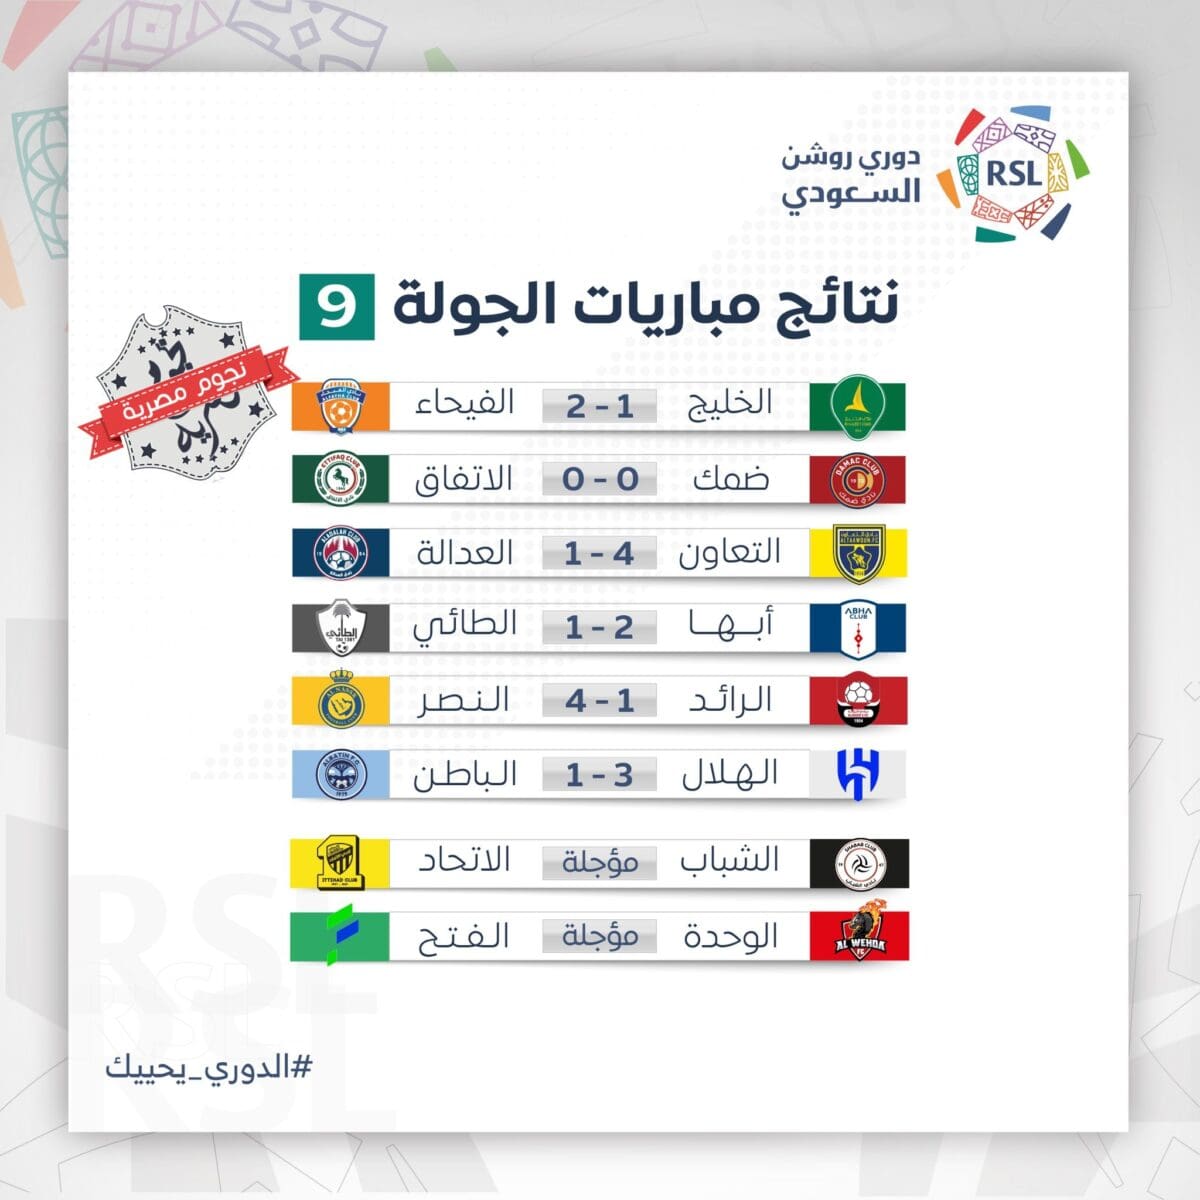 نتائج مباريات الجولة التاسعة في دوري روشن السعودي للمحترفين